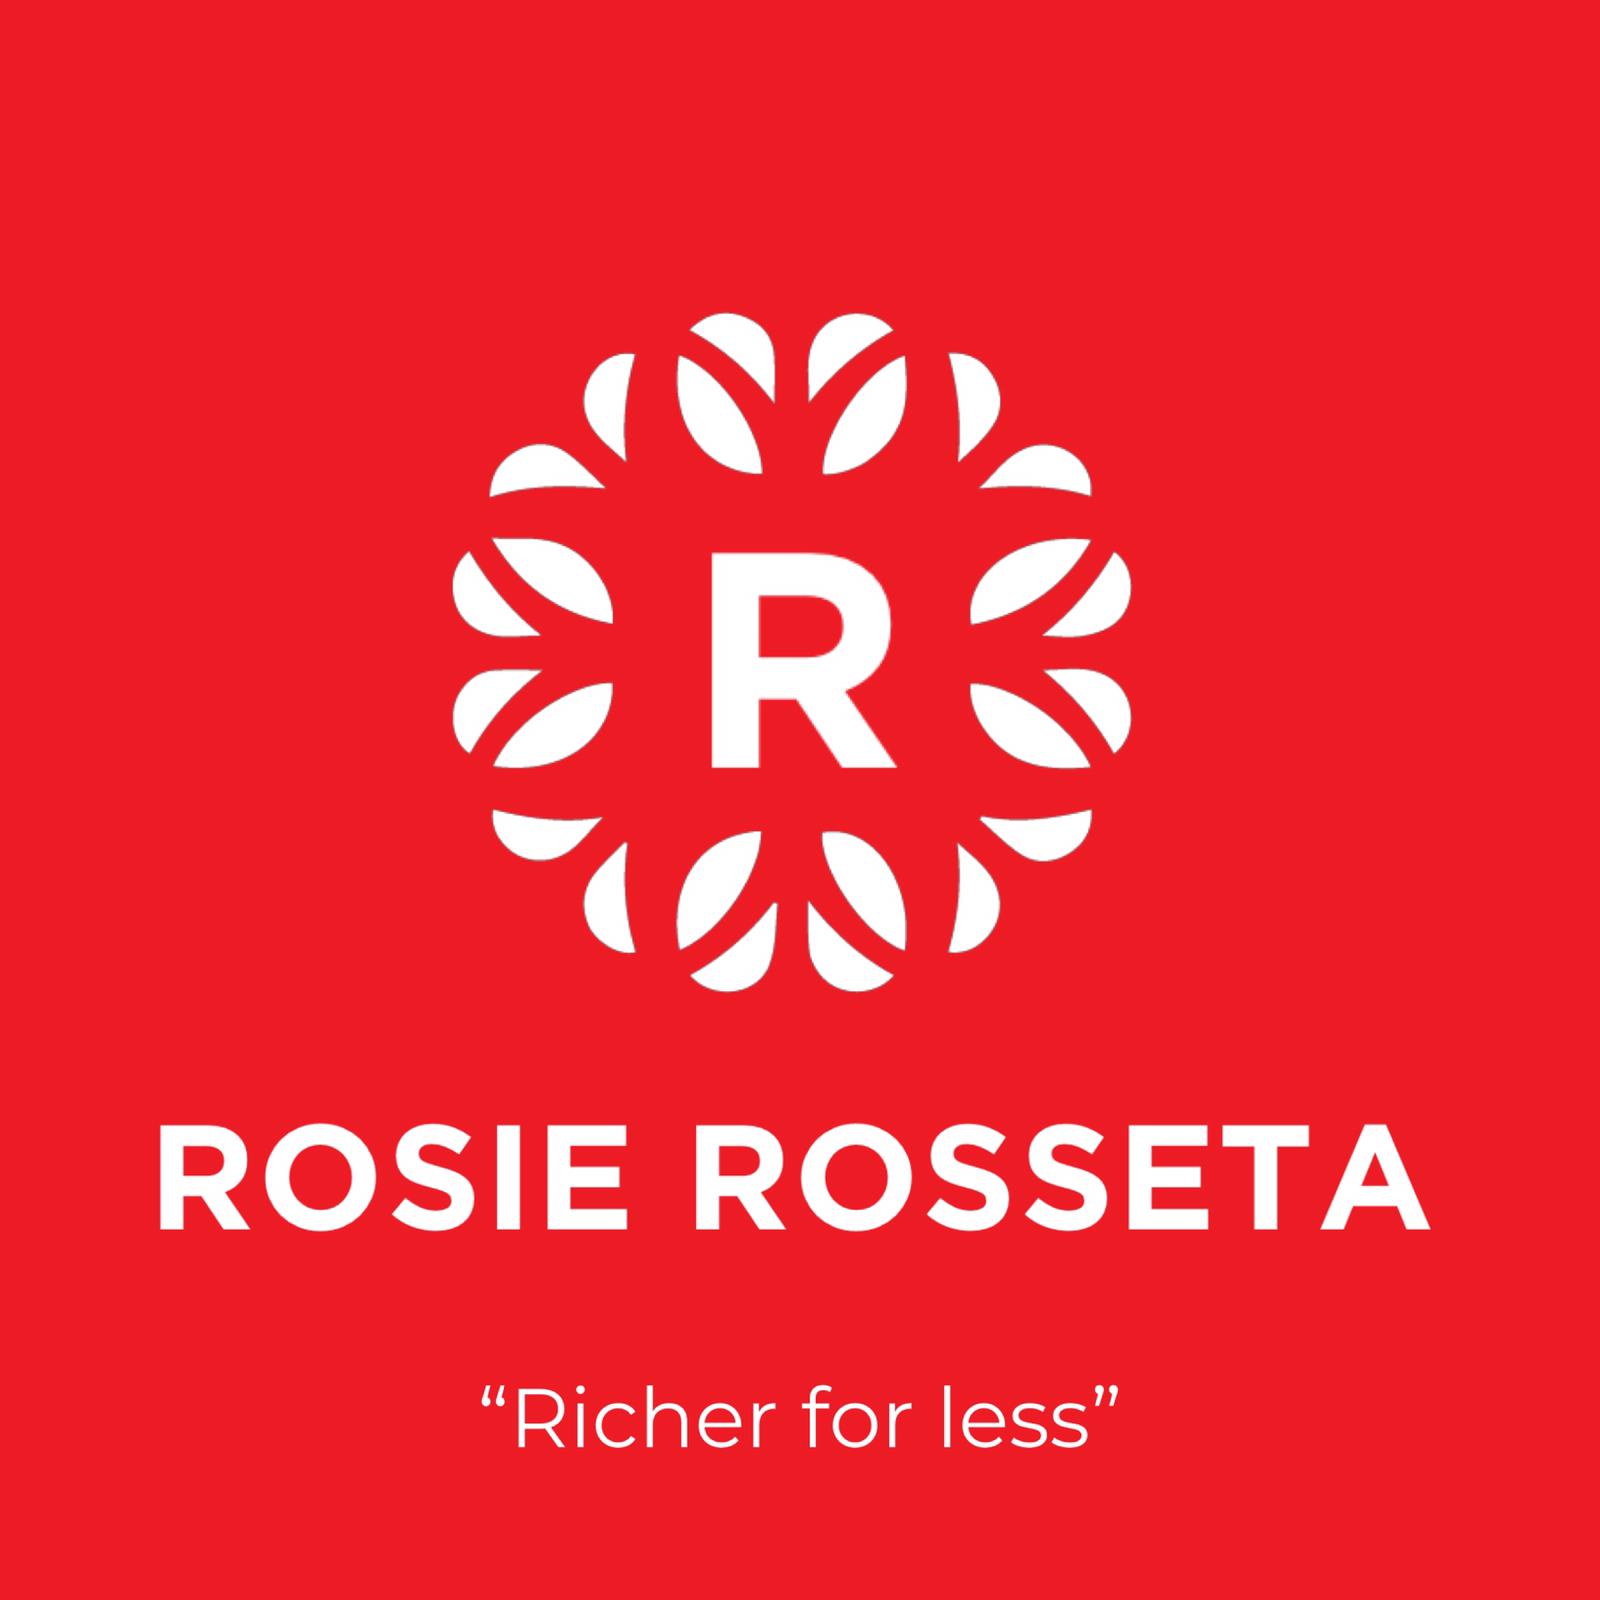 Rosie Rosetta